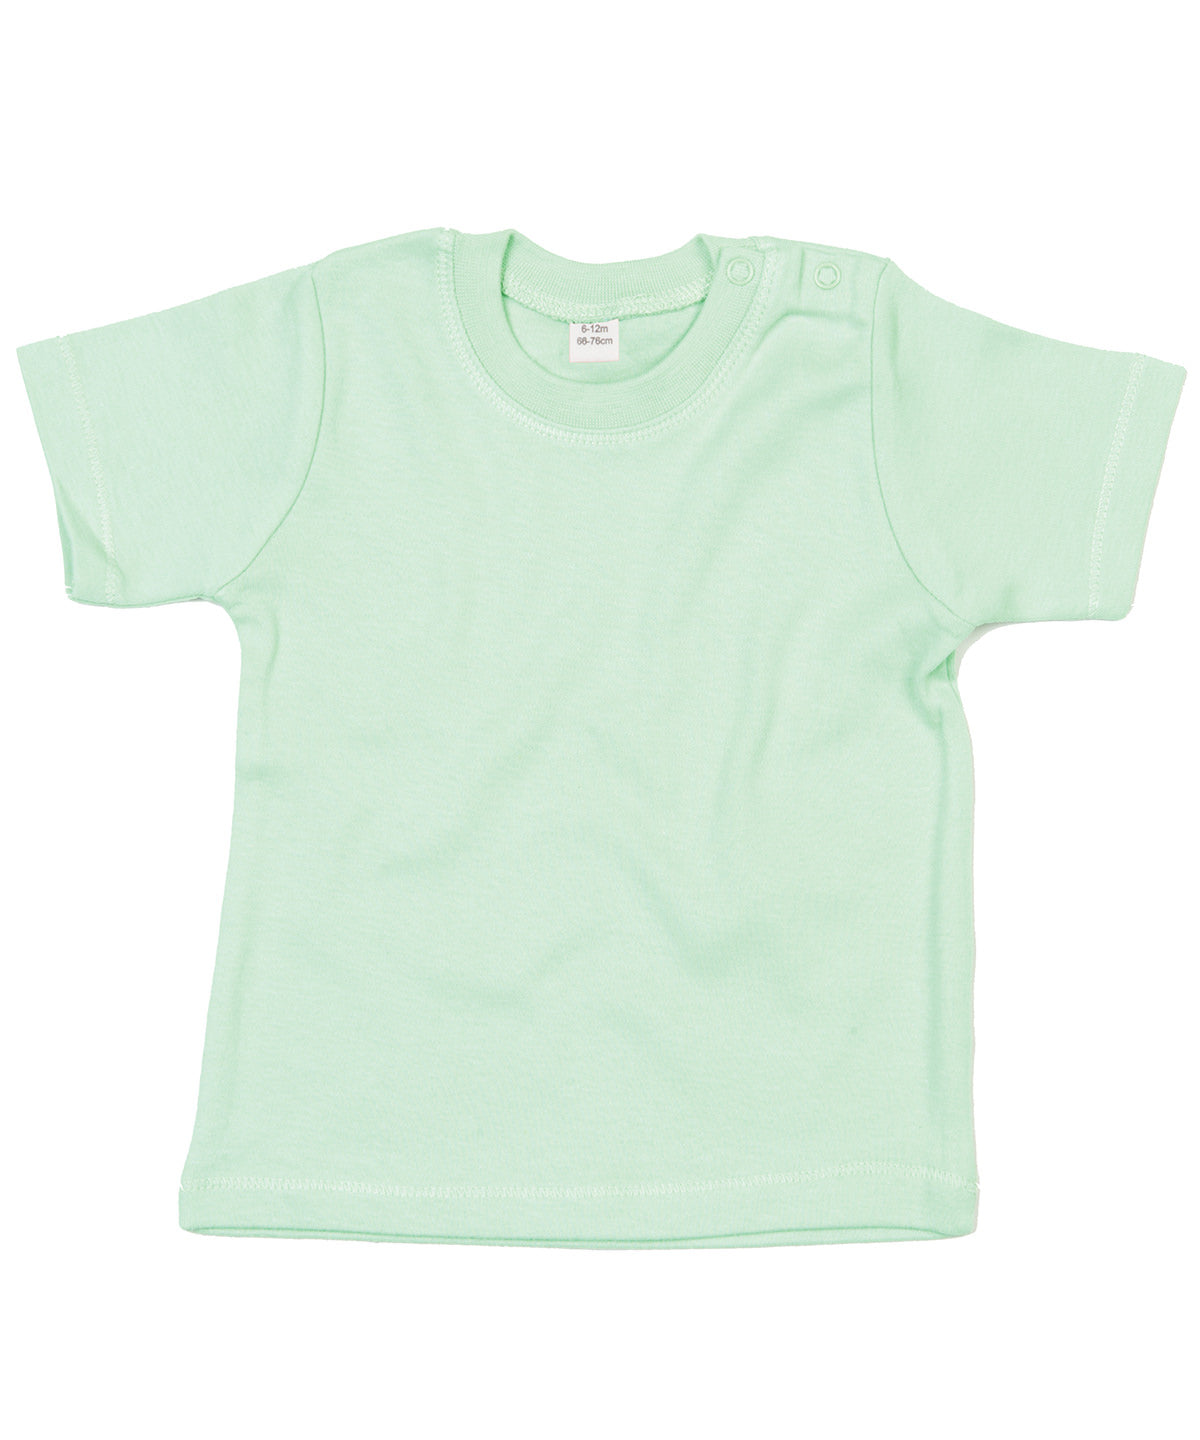 Personalised T-Shirts - Burgundy Babybugz Baby T